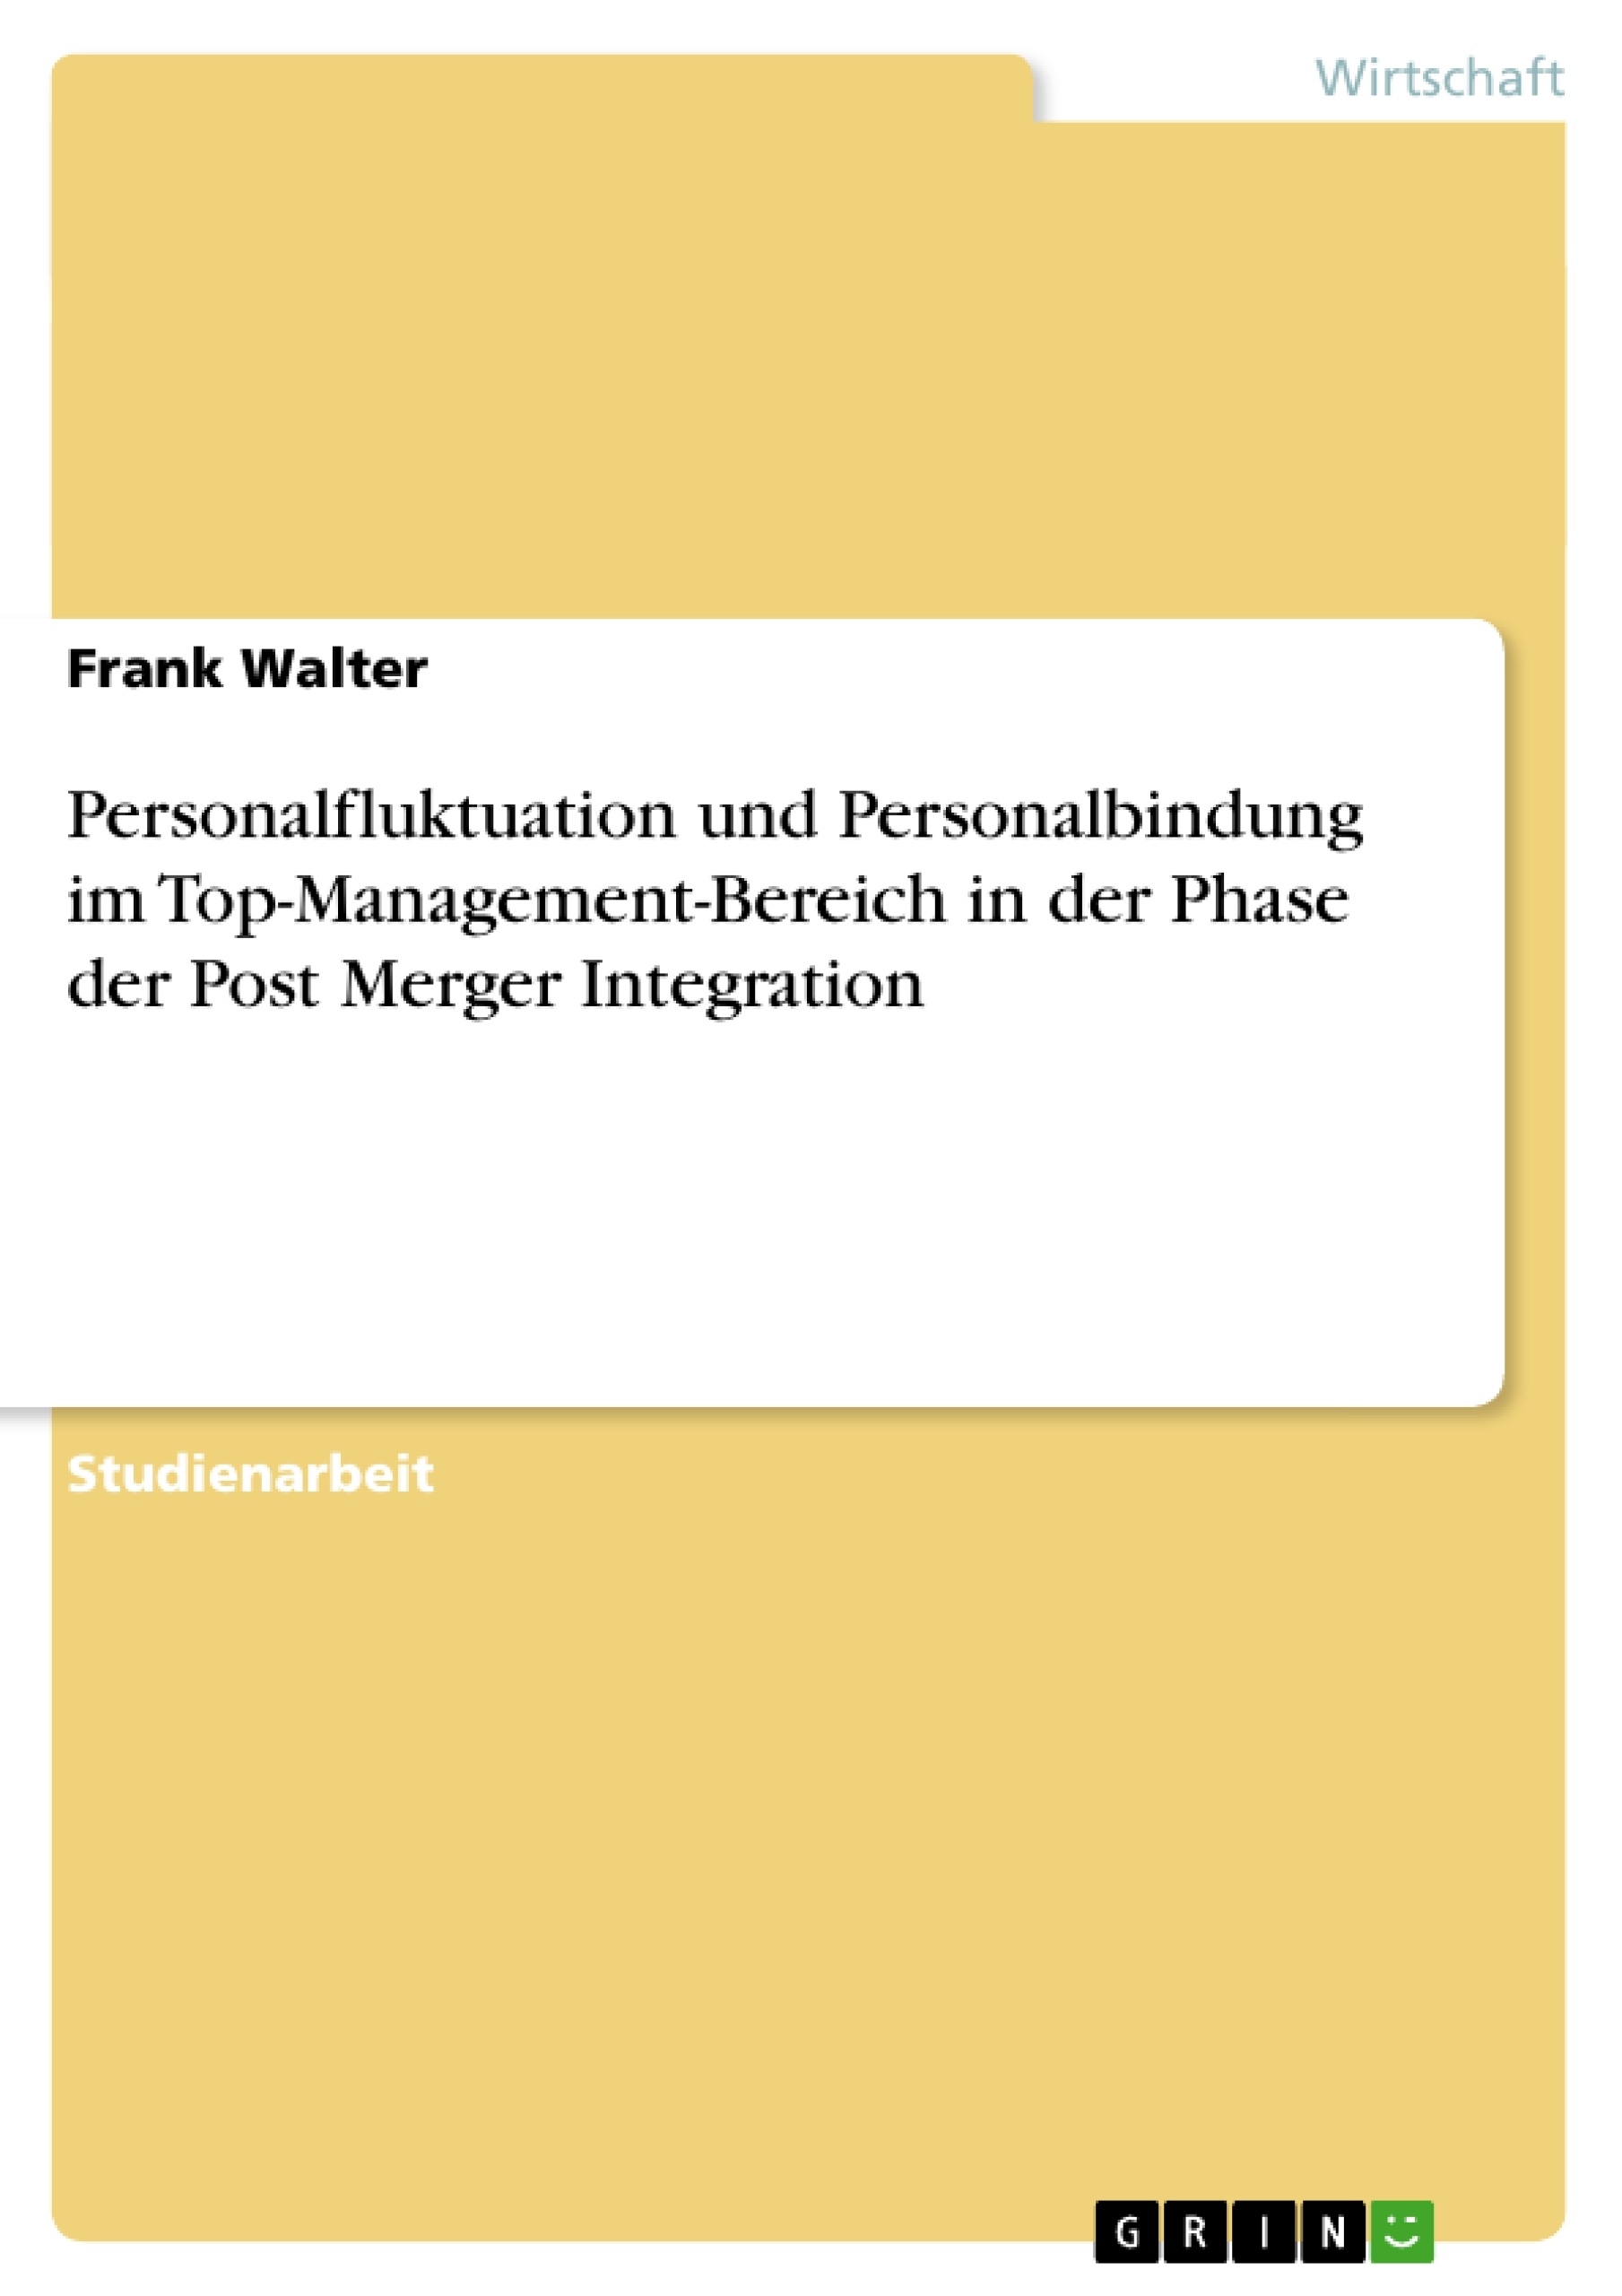 Título: Personalfluktuation und Personalbindung im Top-Management-Bereich in der Phase der Post Merger Integration